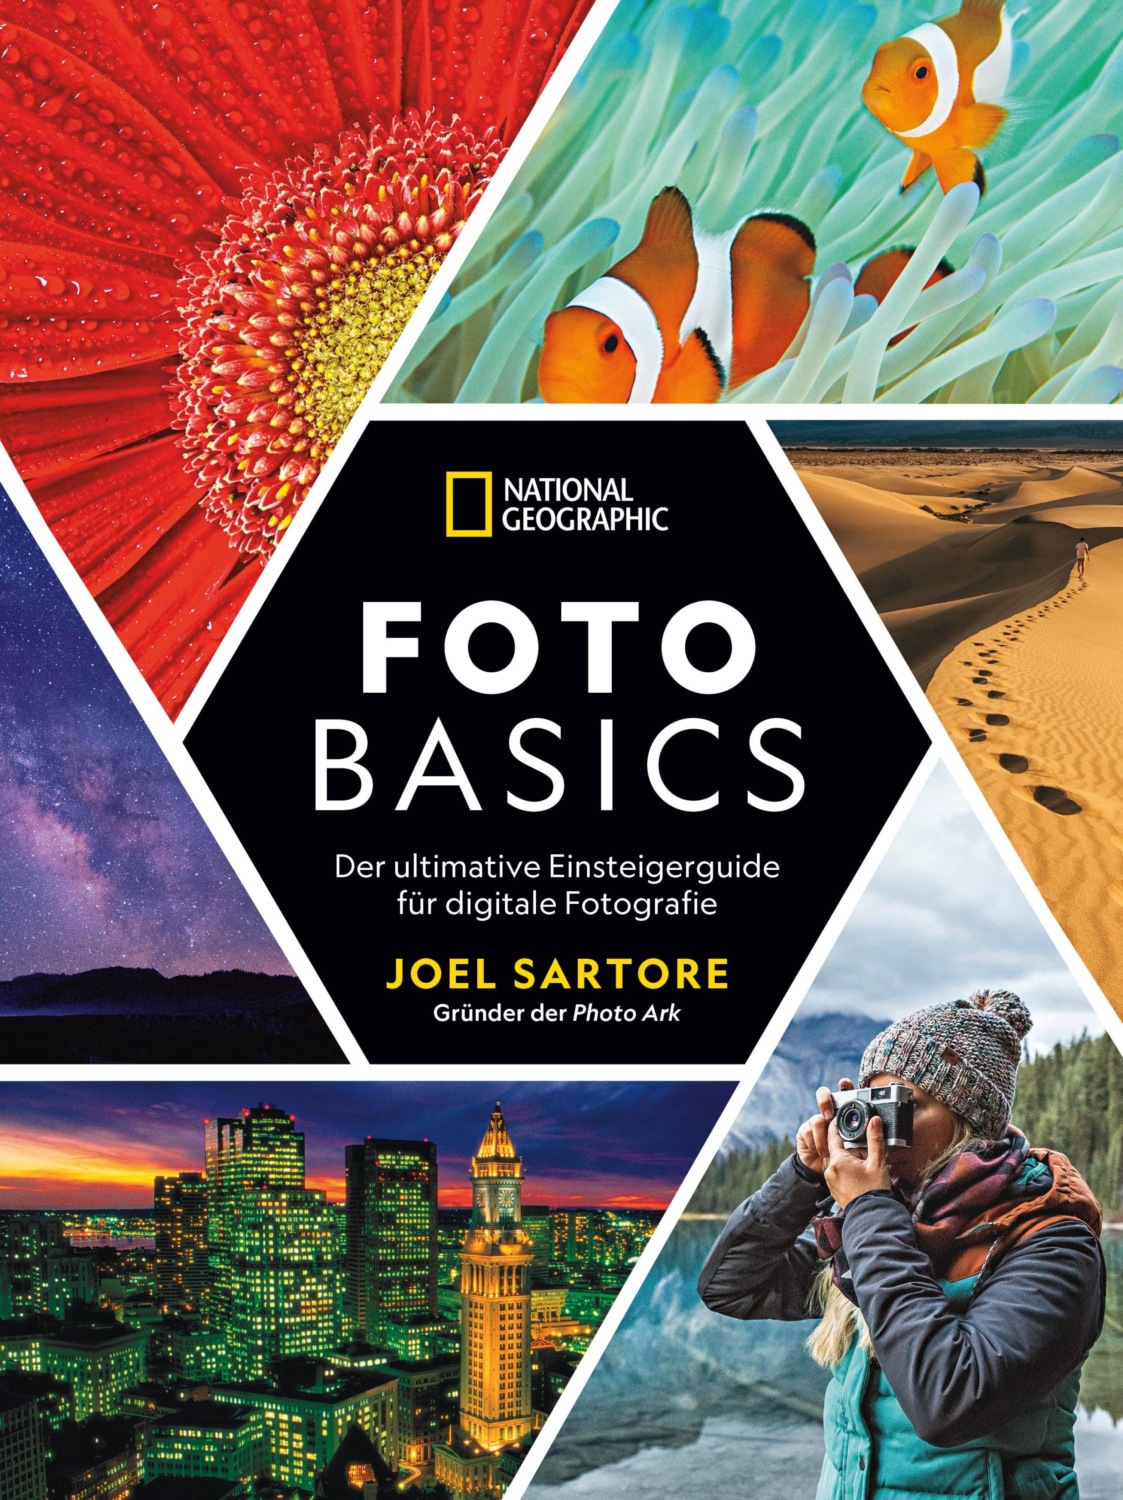 National Geographic: Foto-Basics - Der ultimative Einsteigerguide für  digitale Fotografie., Joel Sartore – читать онлайн на Литрес